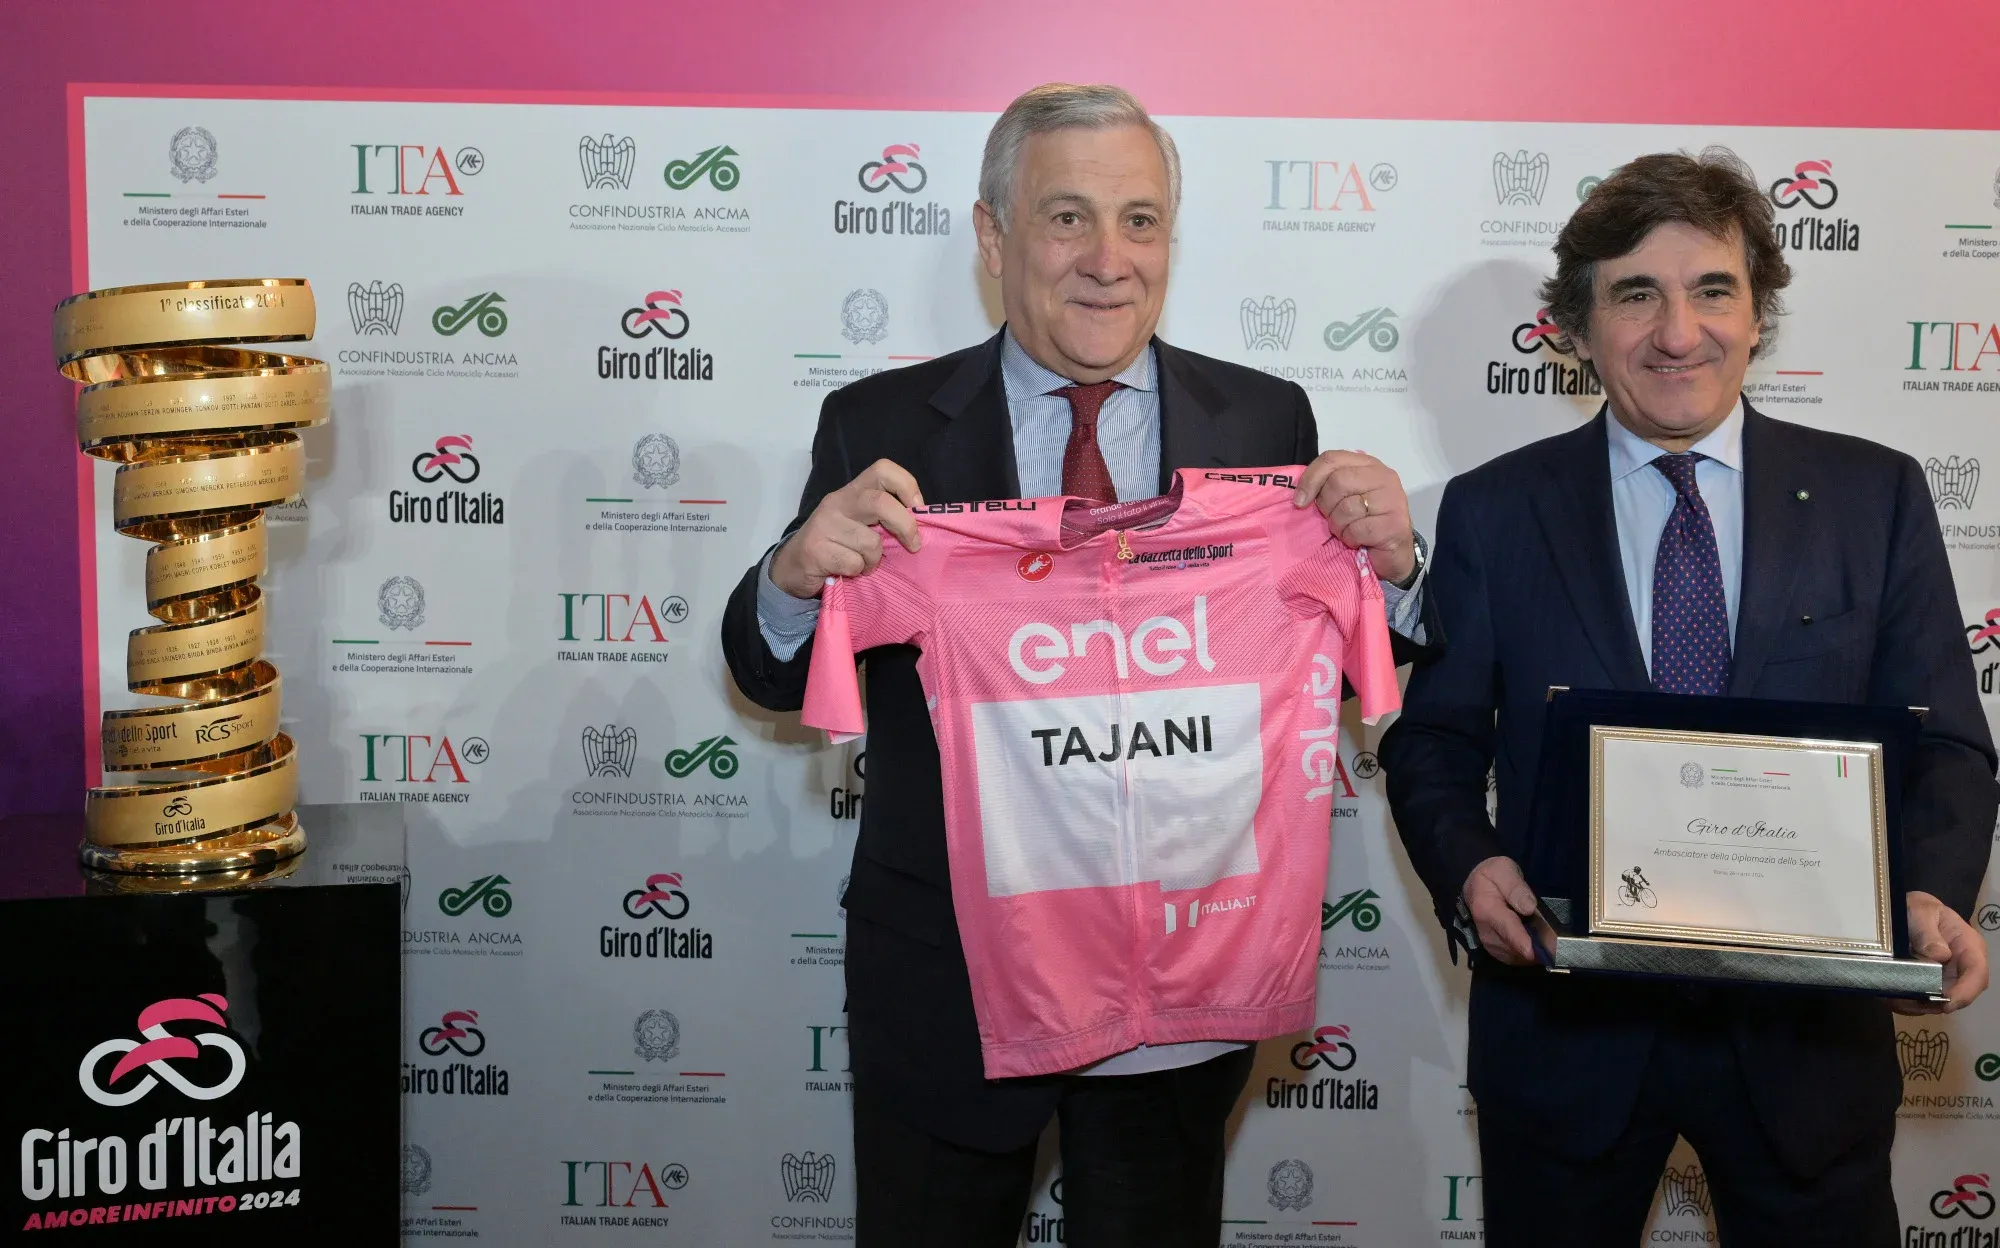 Il Giro d'Italia è stato nominato Ambasciatore della diplomazia dello Sport nel mondo